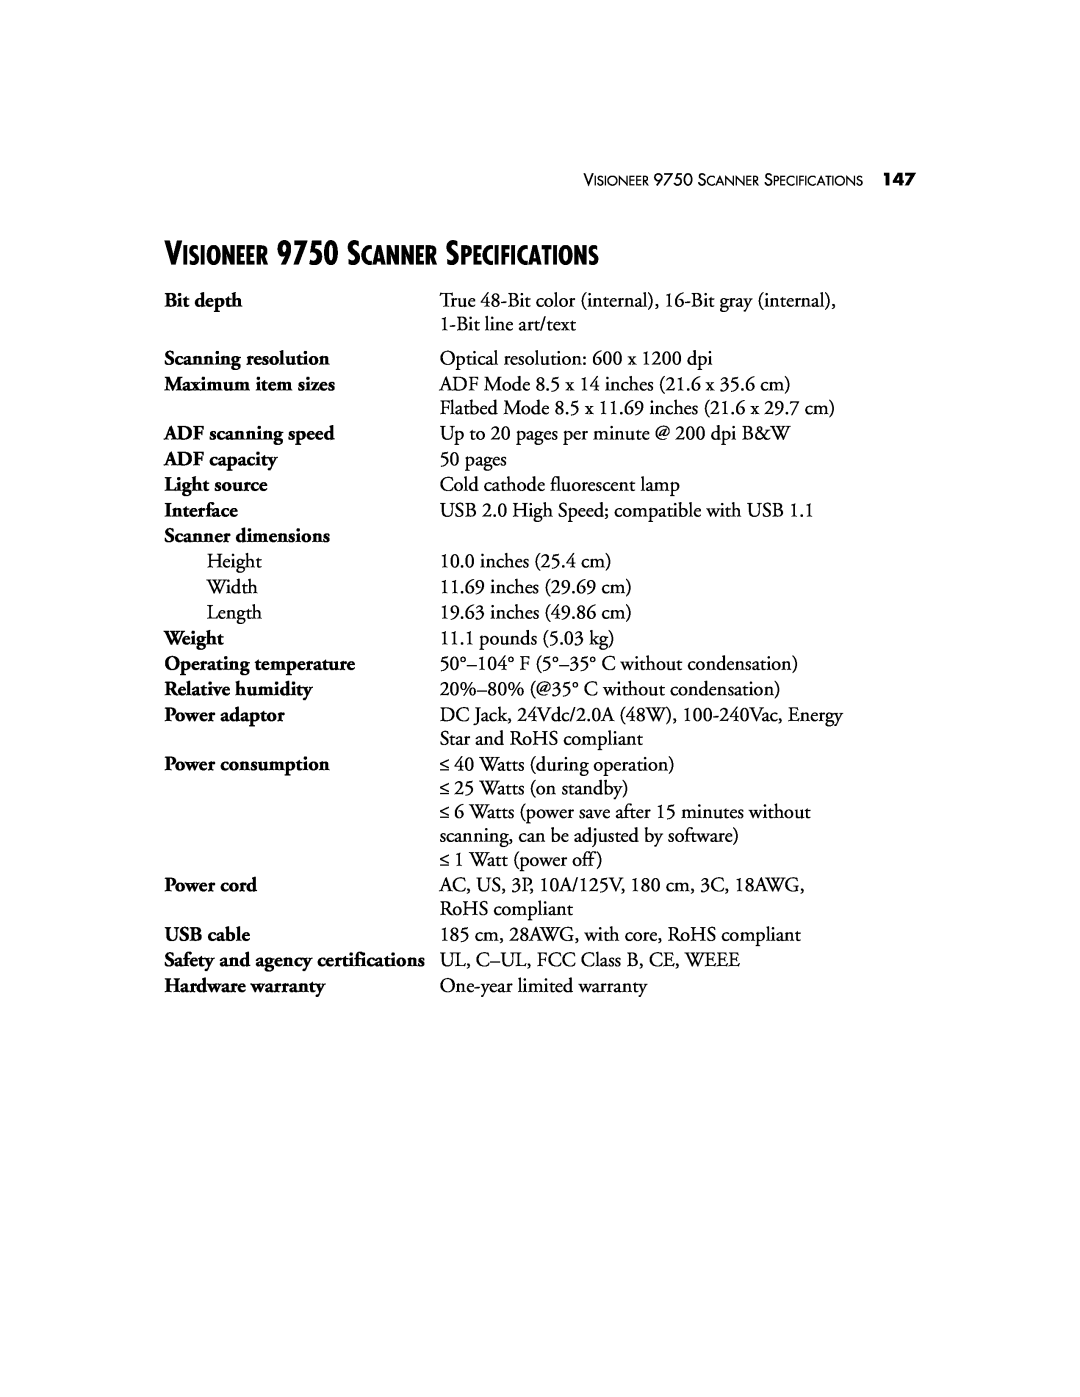 Visioneer manual VISIONEER 9750 SCANNER SPECIFICATIONS 